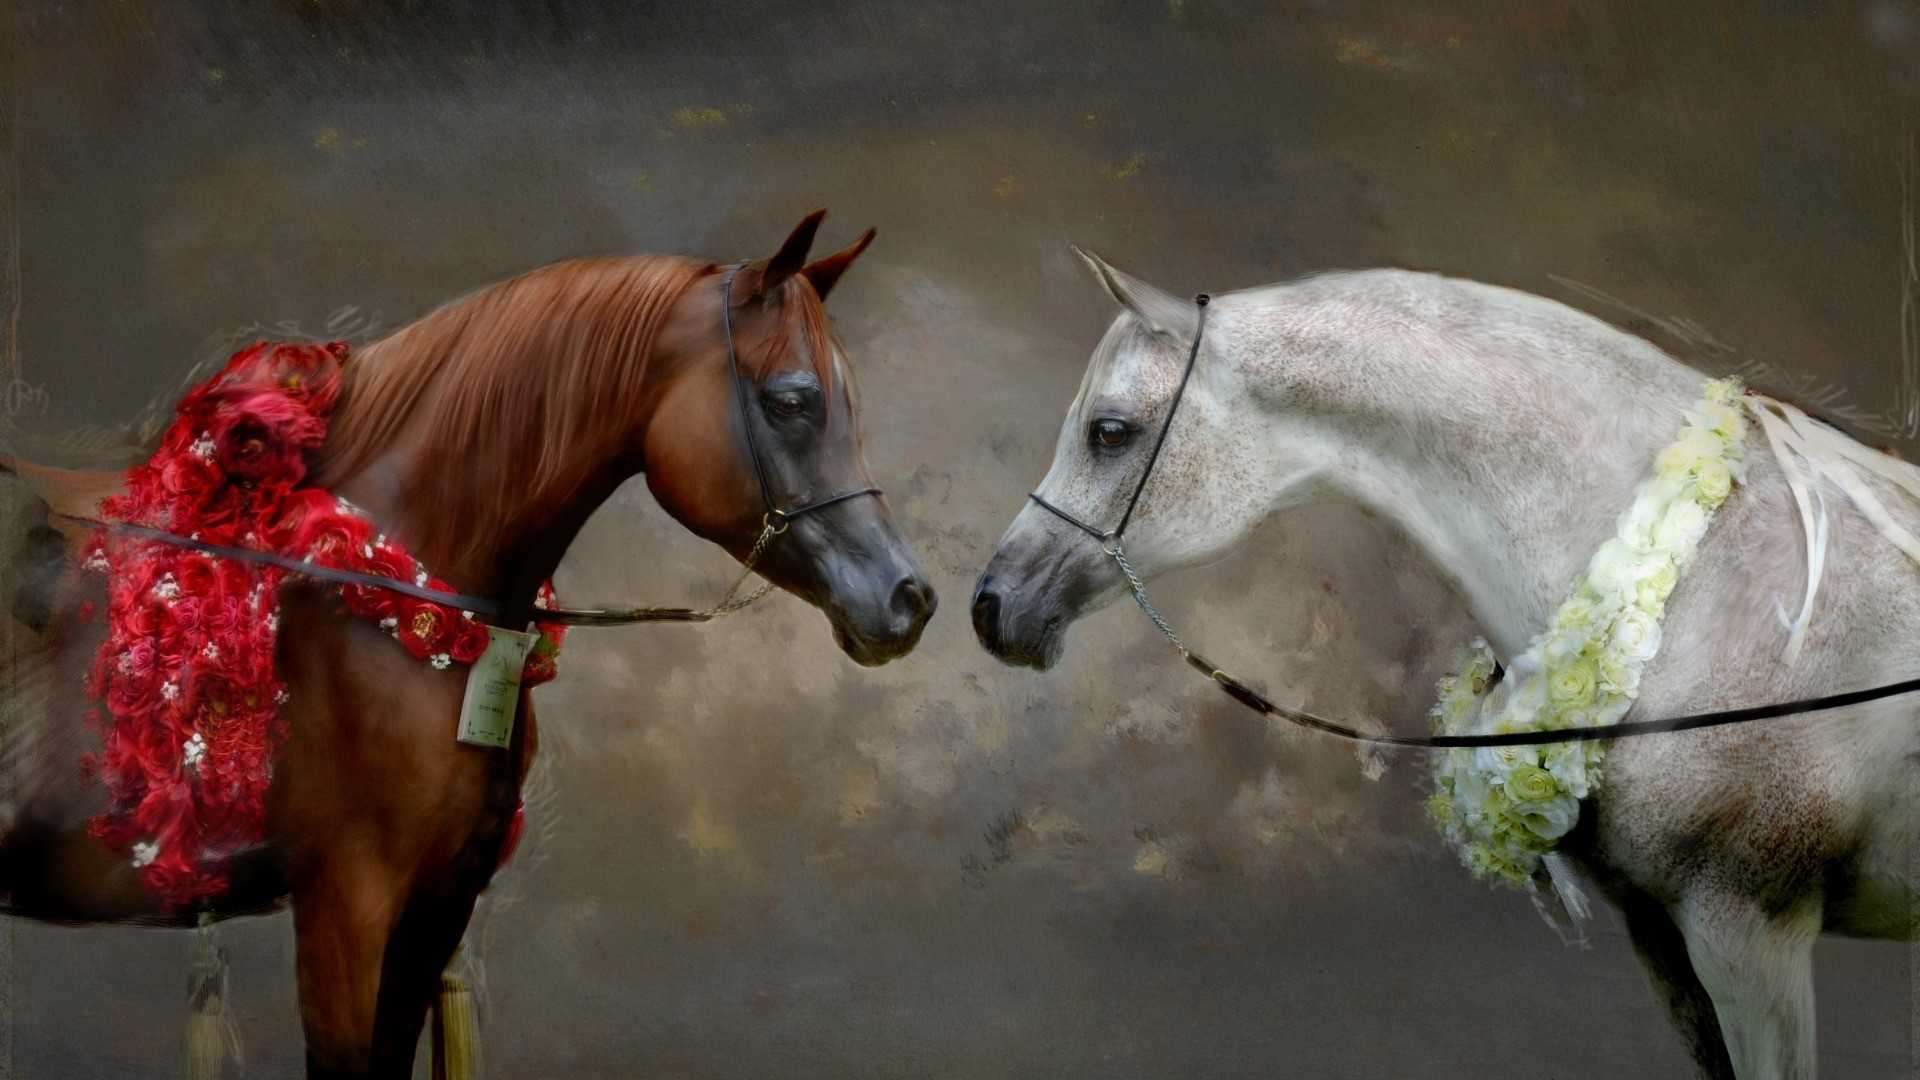 Сонник – конь, к чему снится лошадь